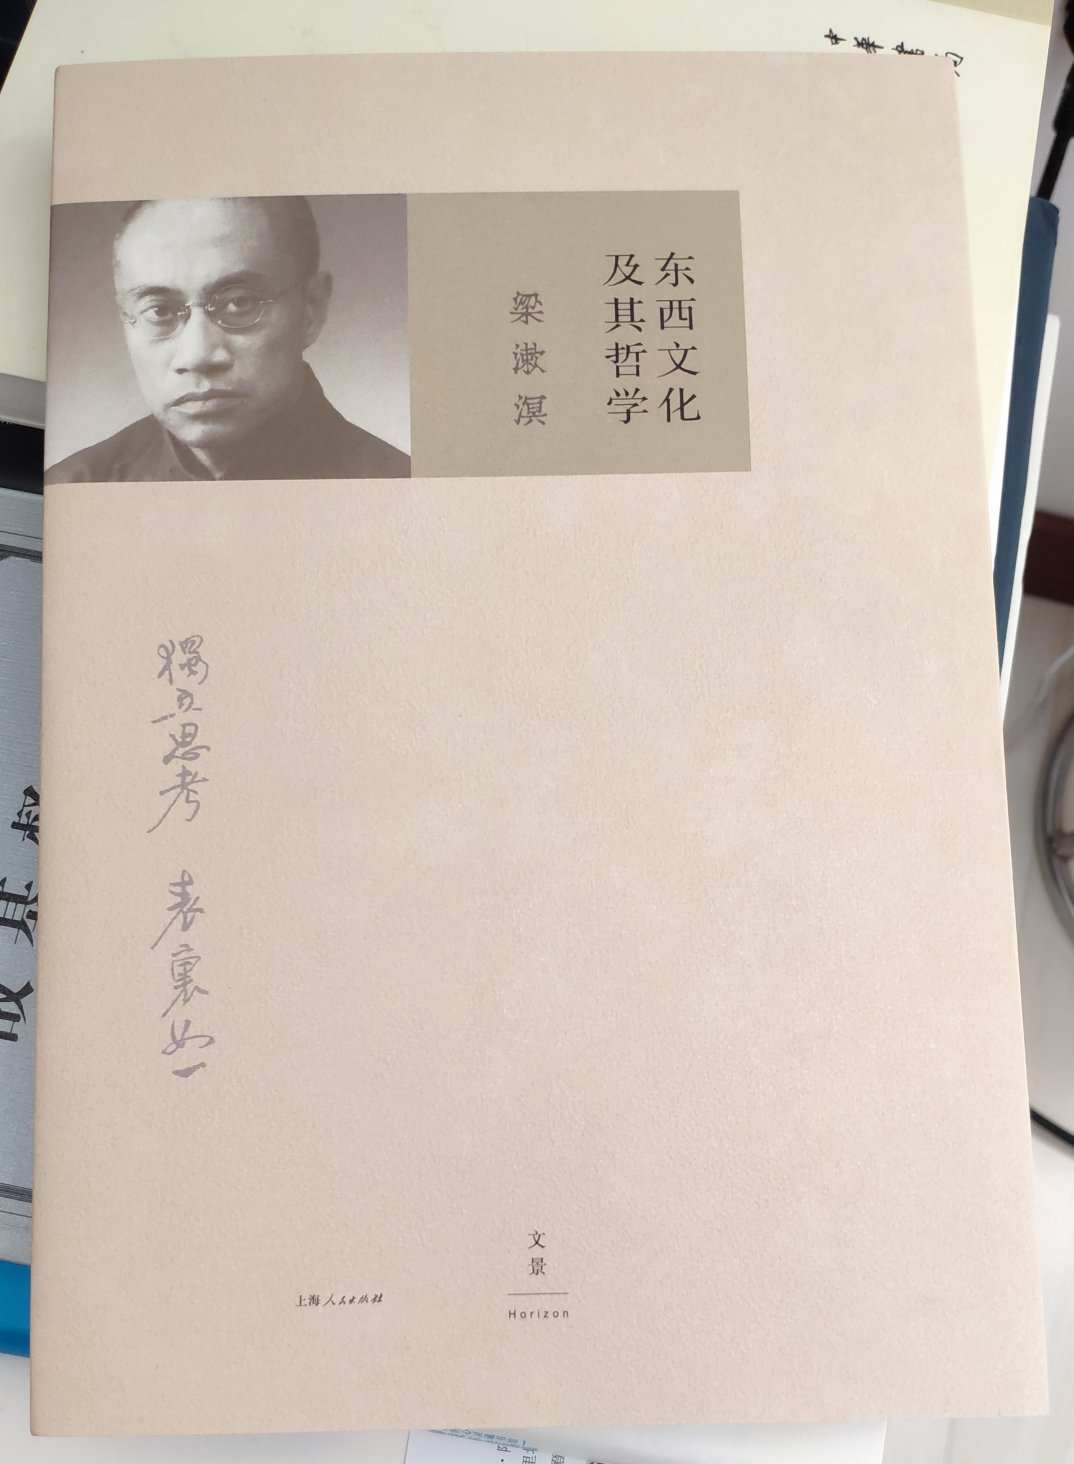 梁漱溟的大作，讲东西方文化及哲学，值得推荐购买阅读收藏。挺好的一本书。要好好阅读了。